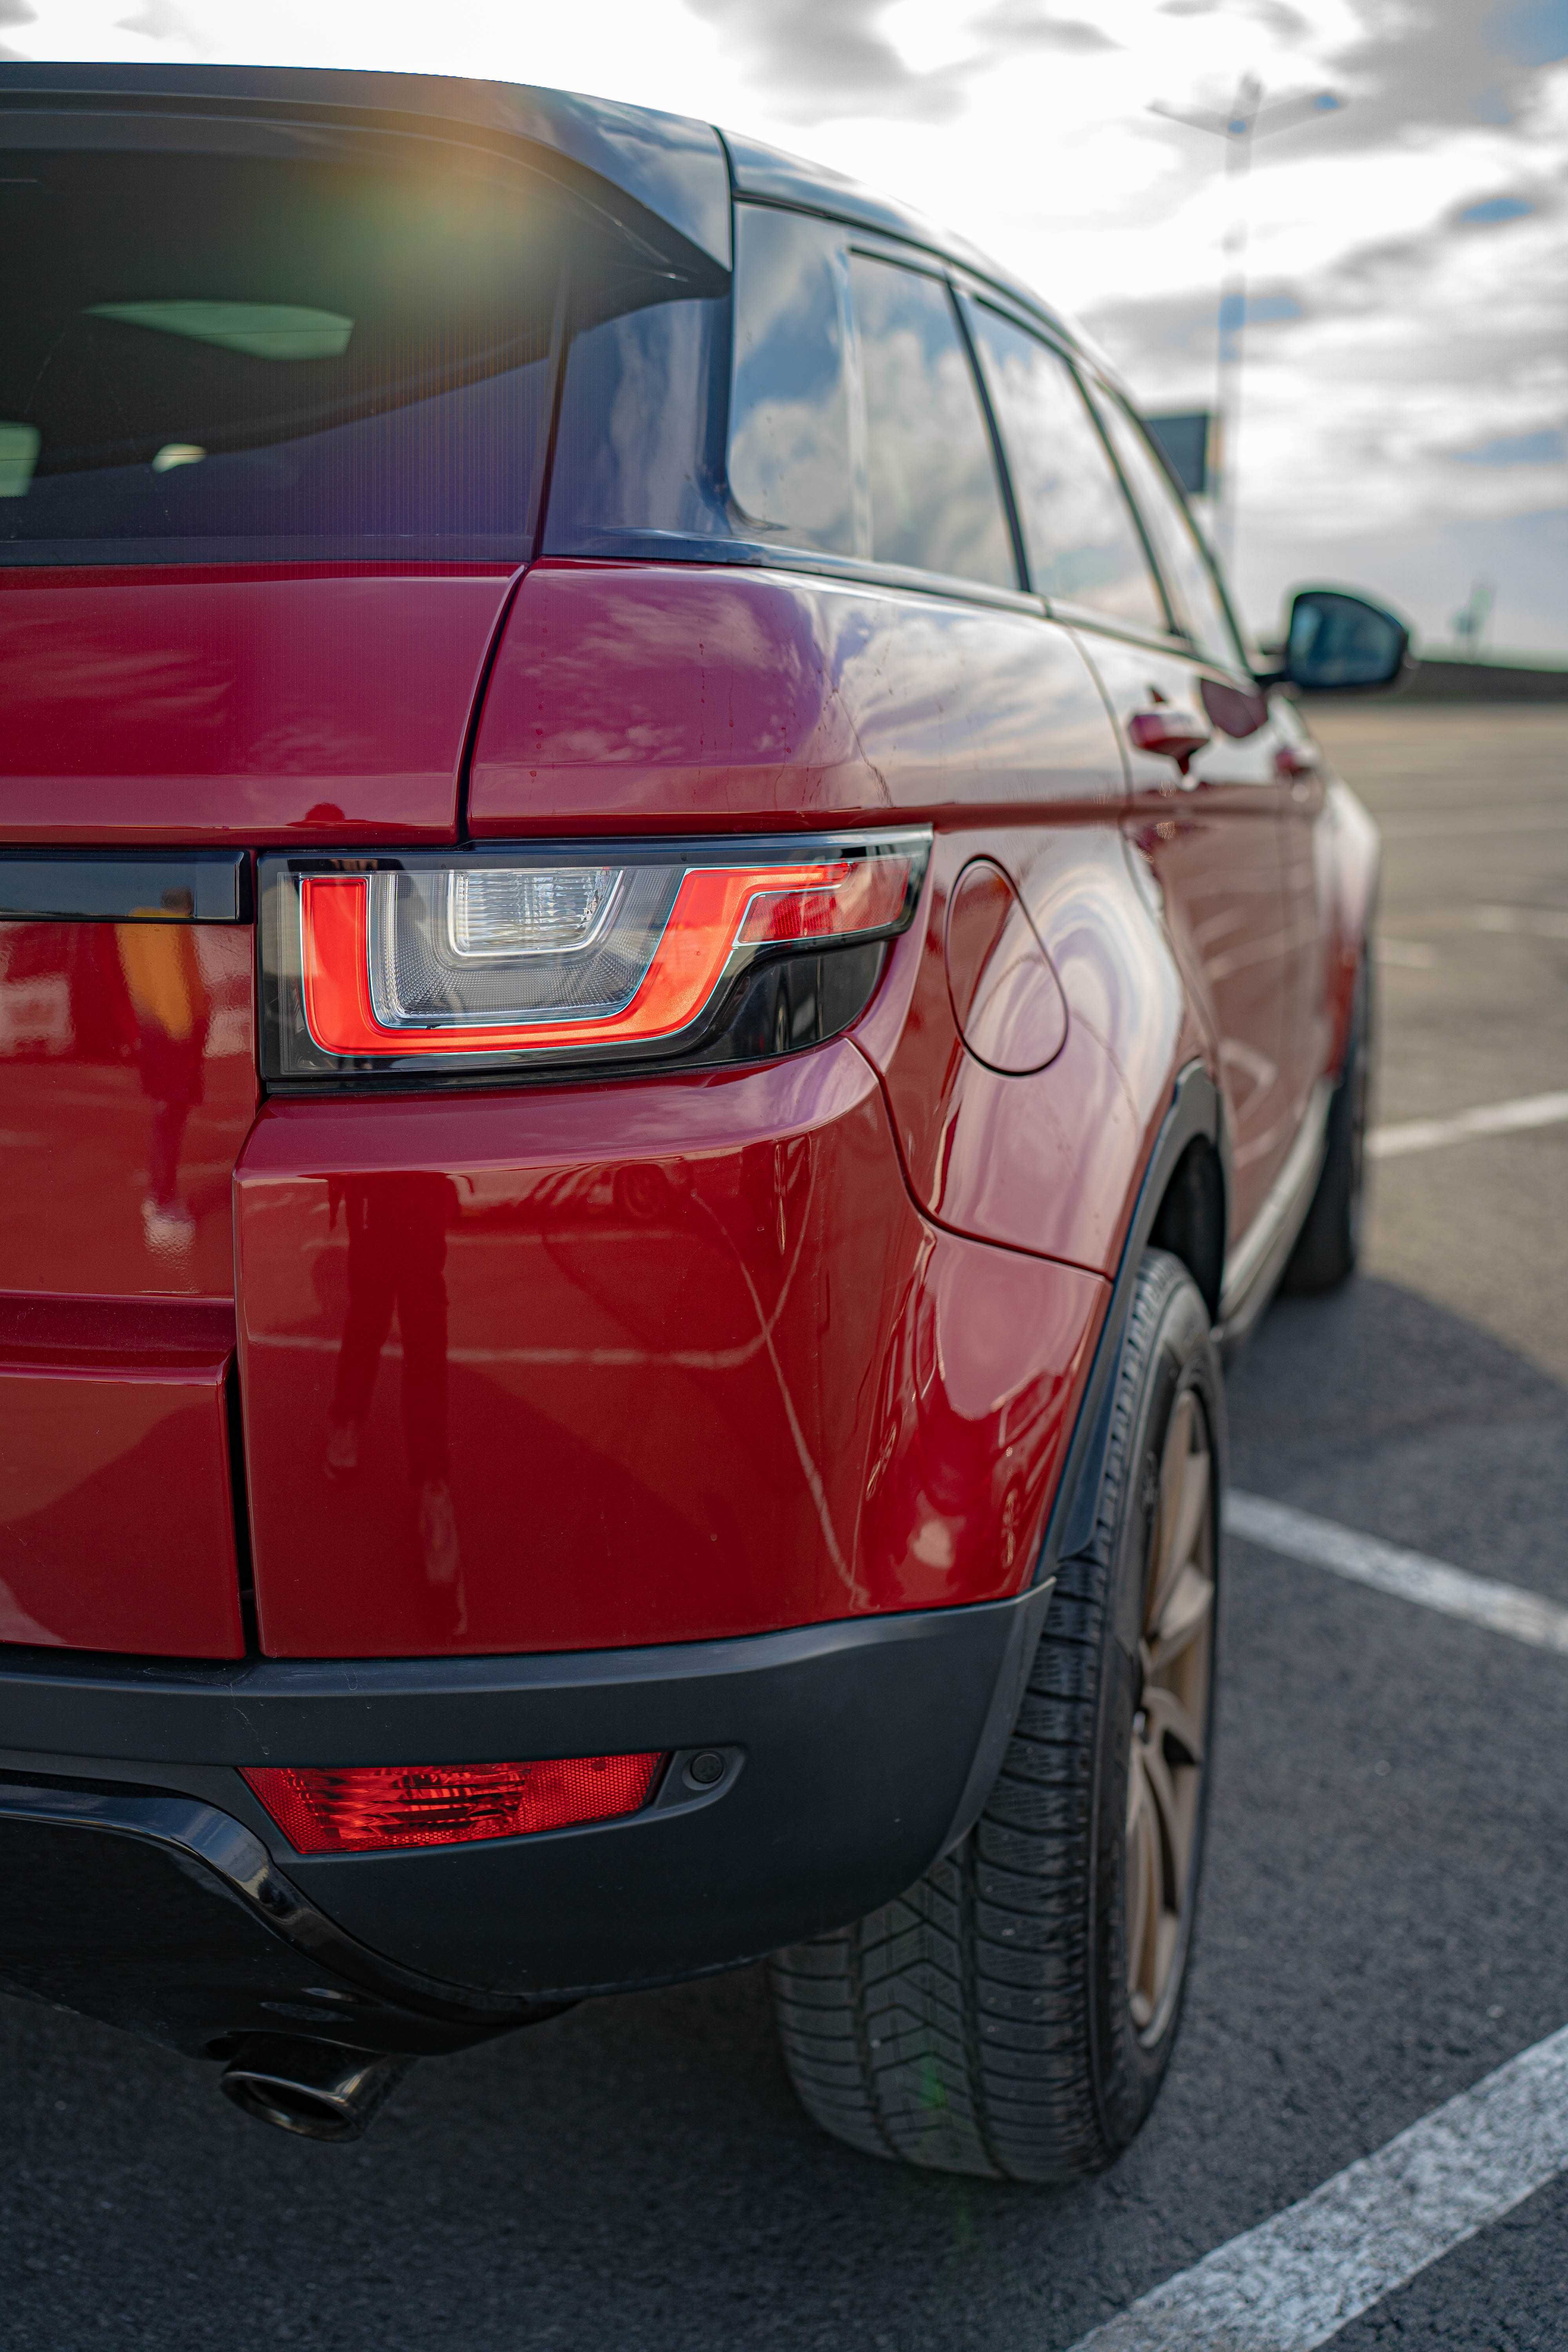 Range Rover Evoque 2016 2.0 ecoboost